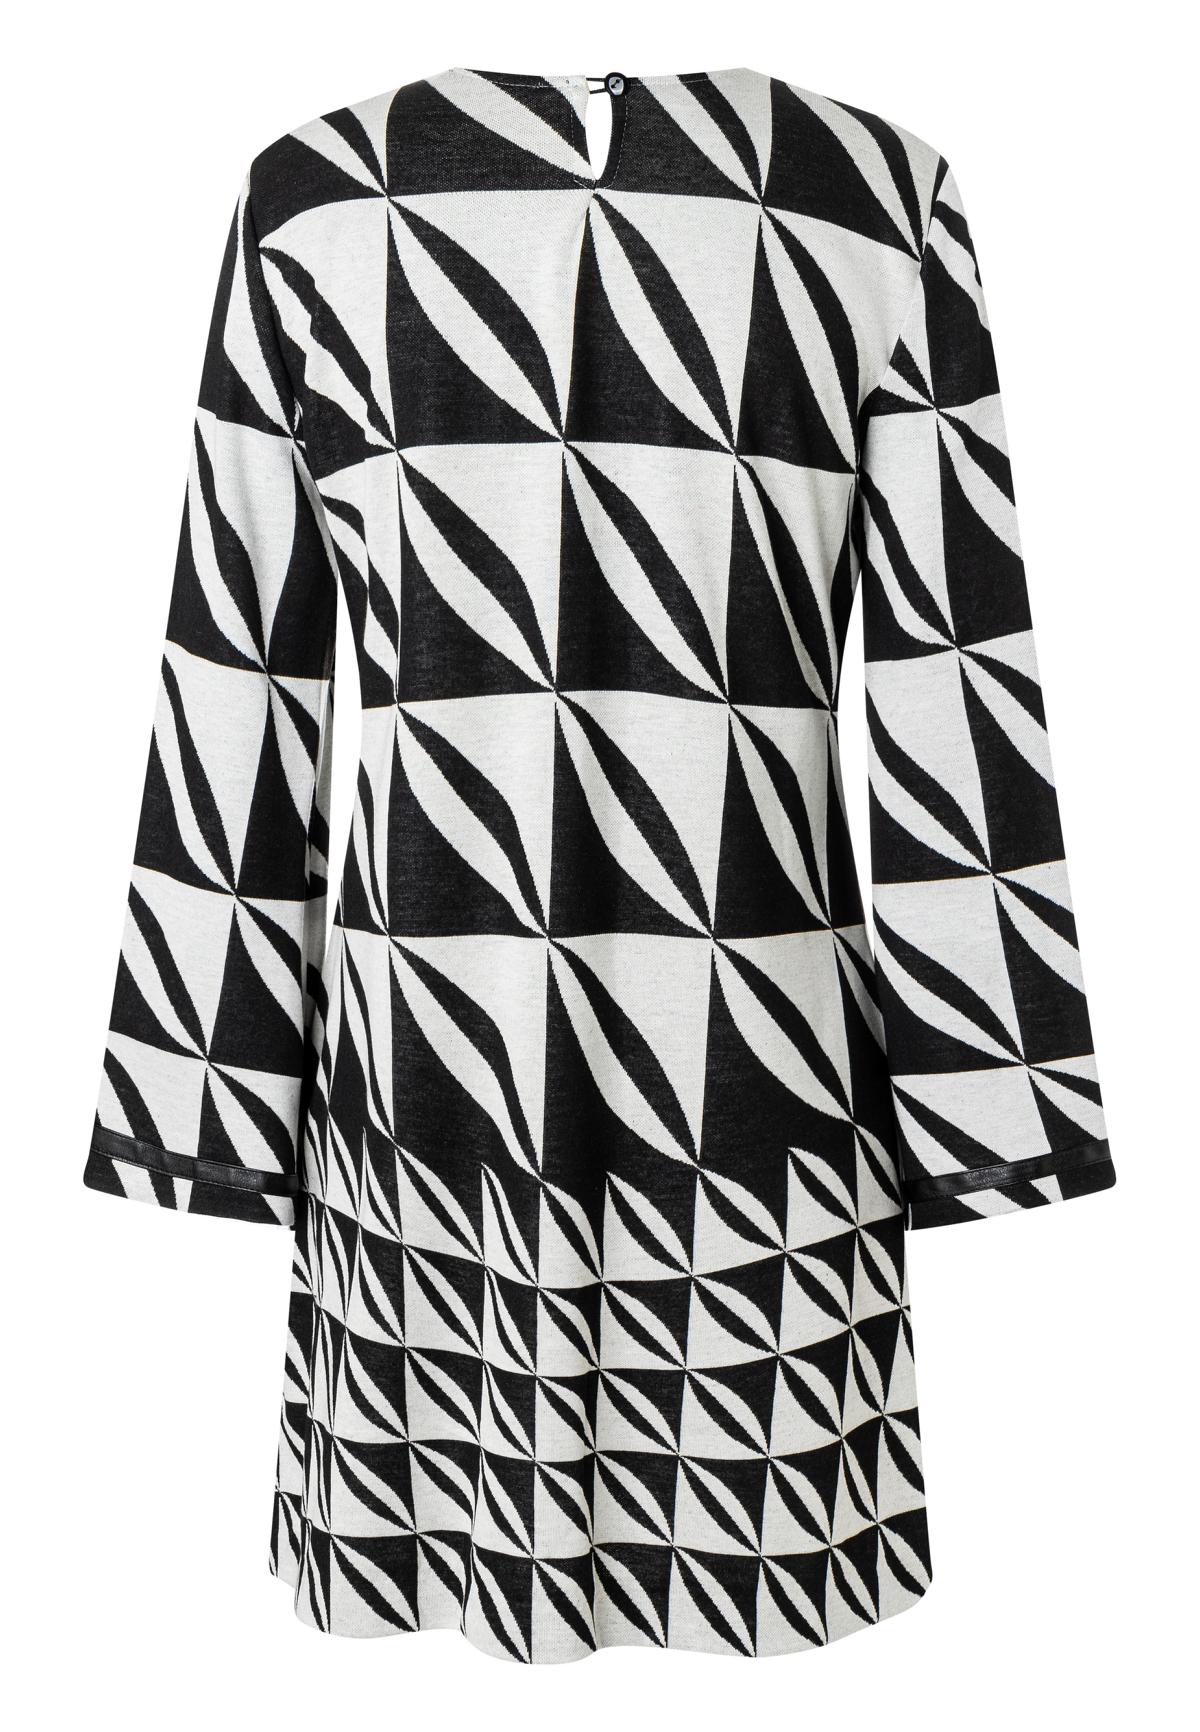 ANA ALCAZAR 040263-3438 dress leather ribben Damen Kleid mit geometrischem muster original black